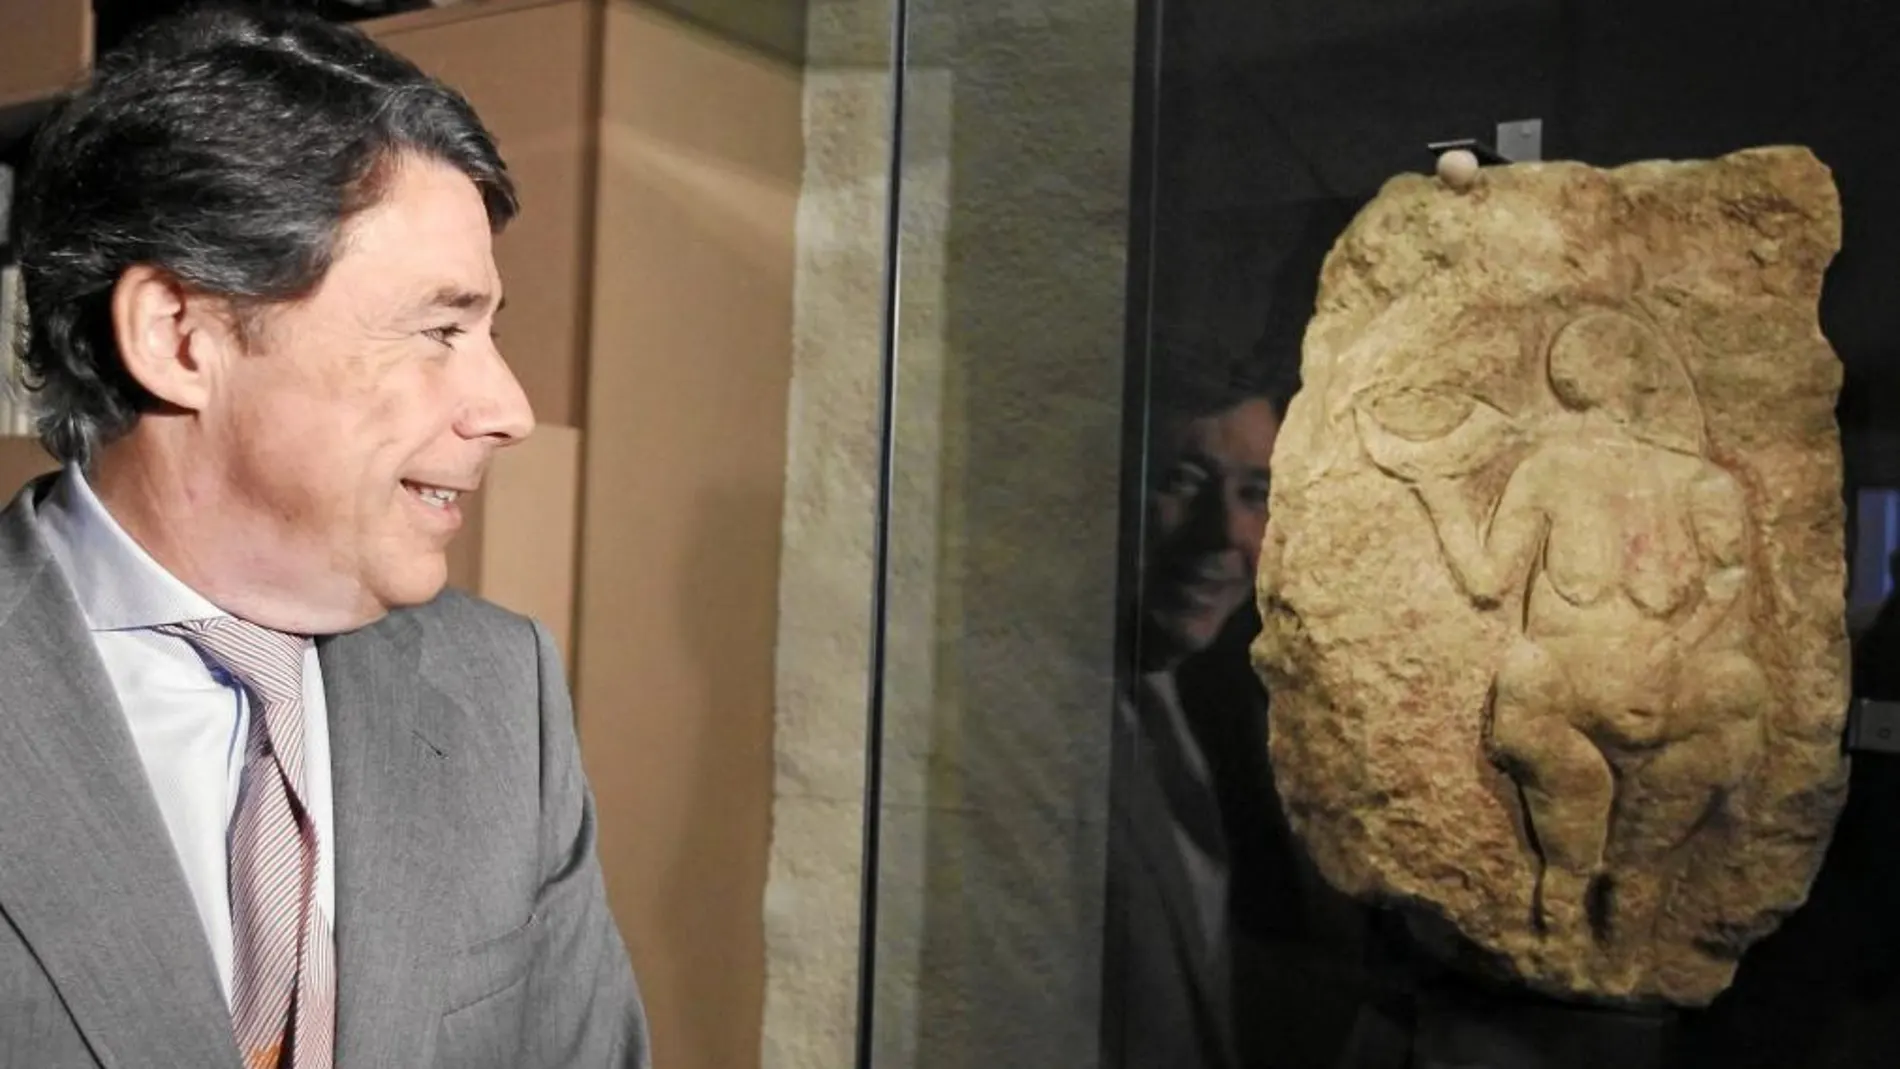 El presidente regional, Ignacio González, inauguró ayer la nueva exposición en el museo Arqueológico Regional en Alcalá de Henares